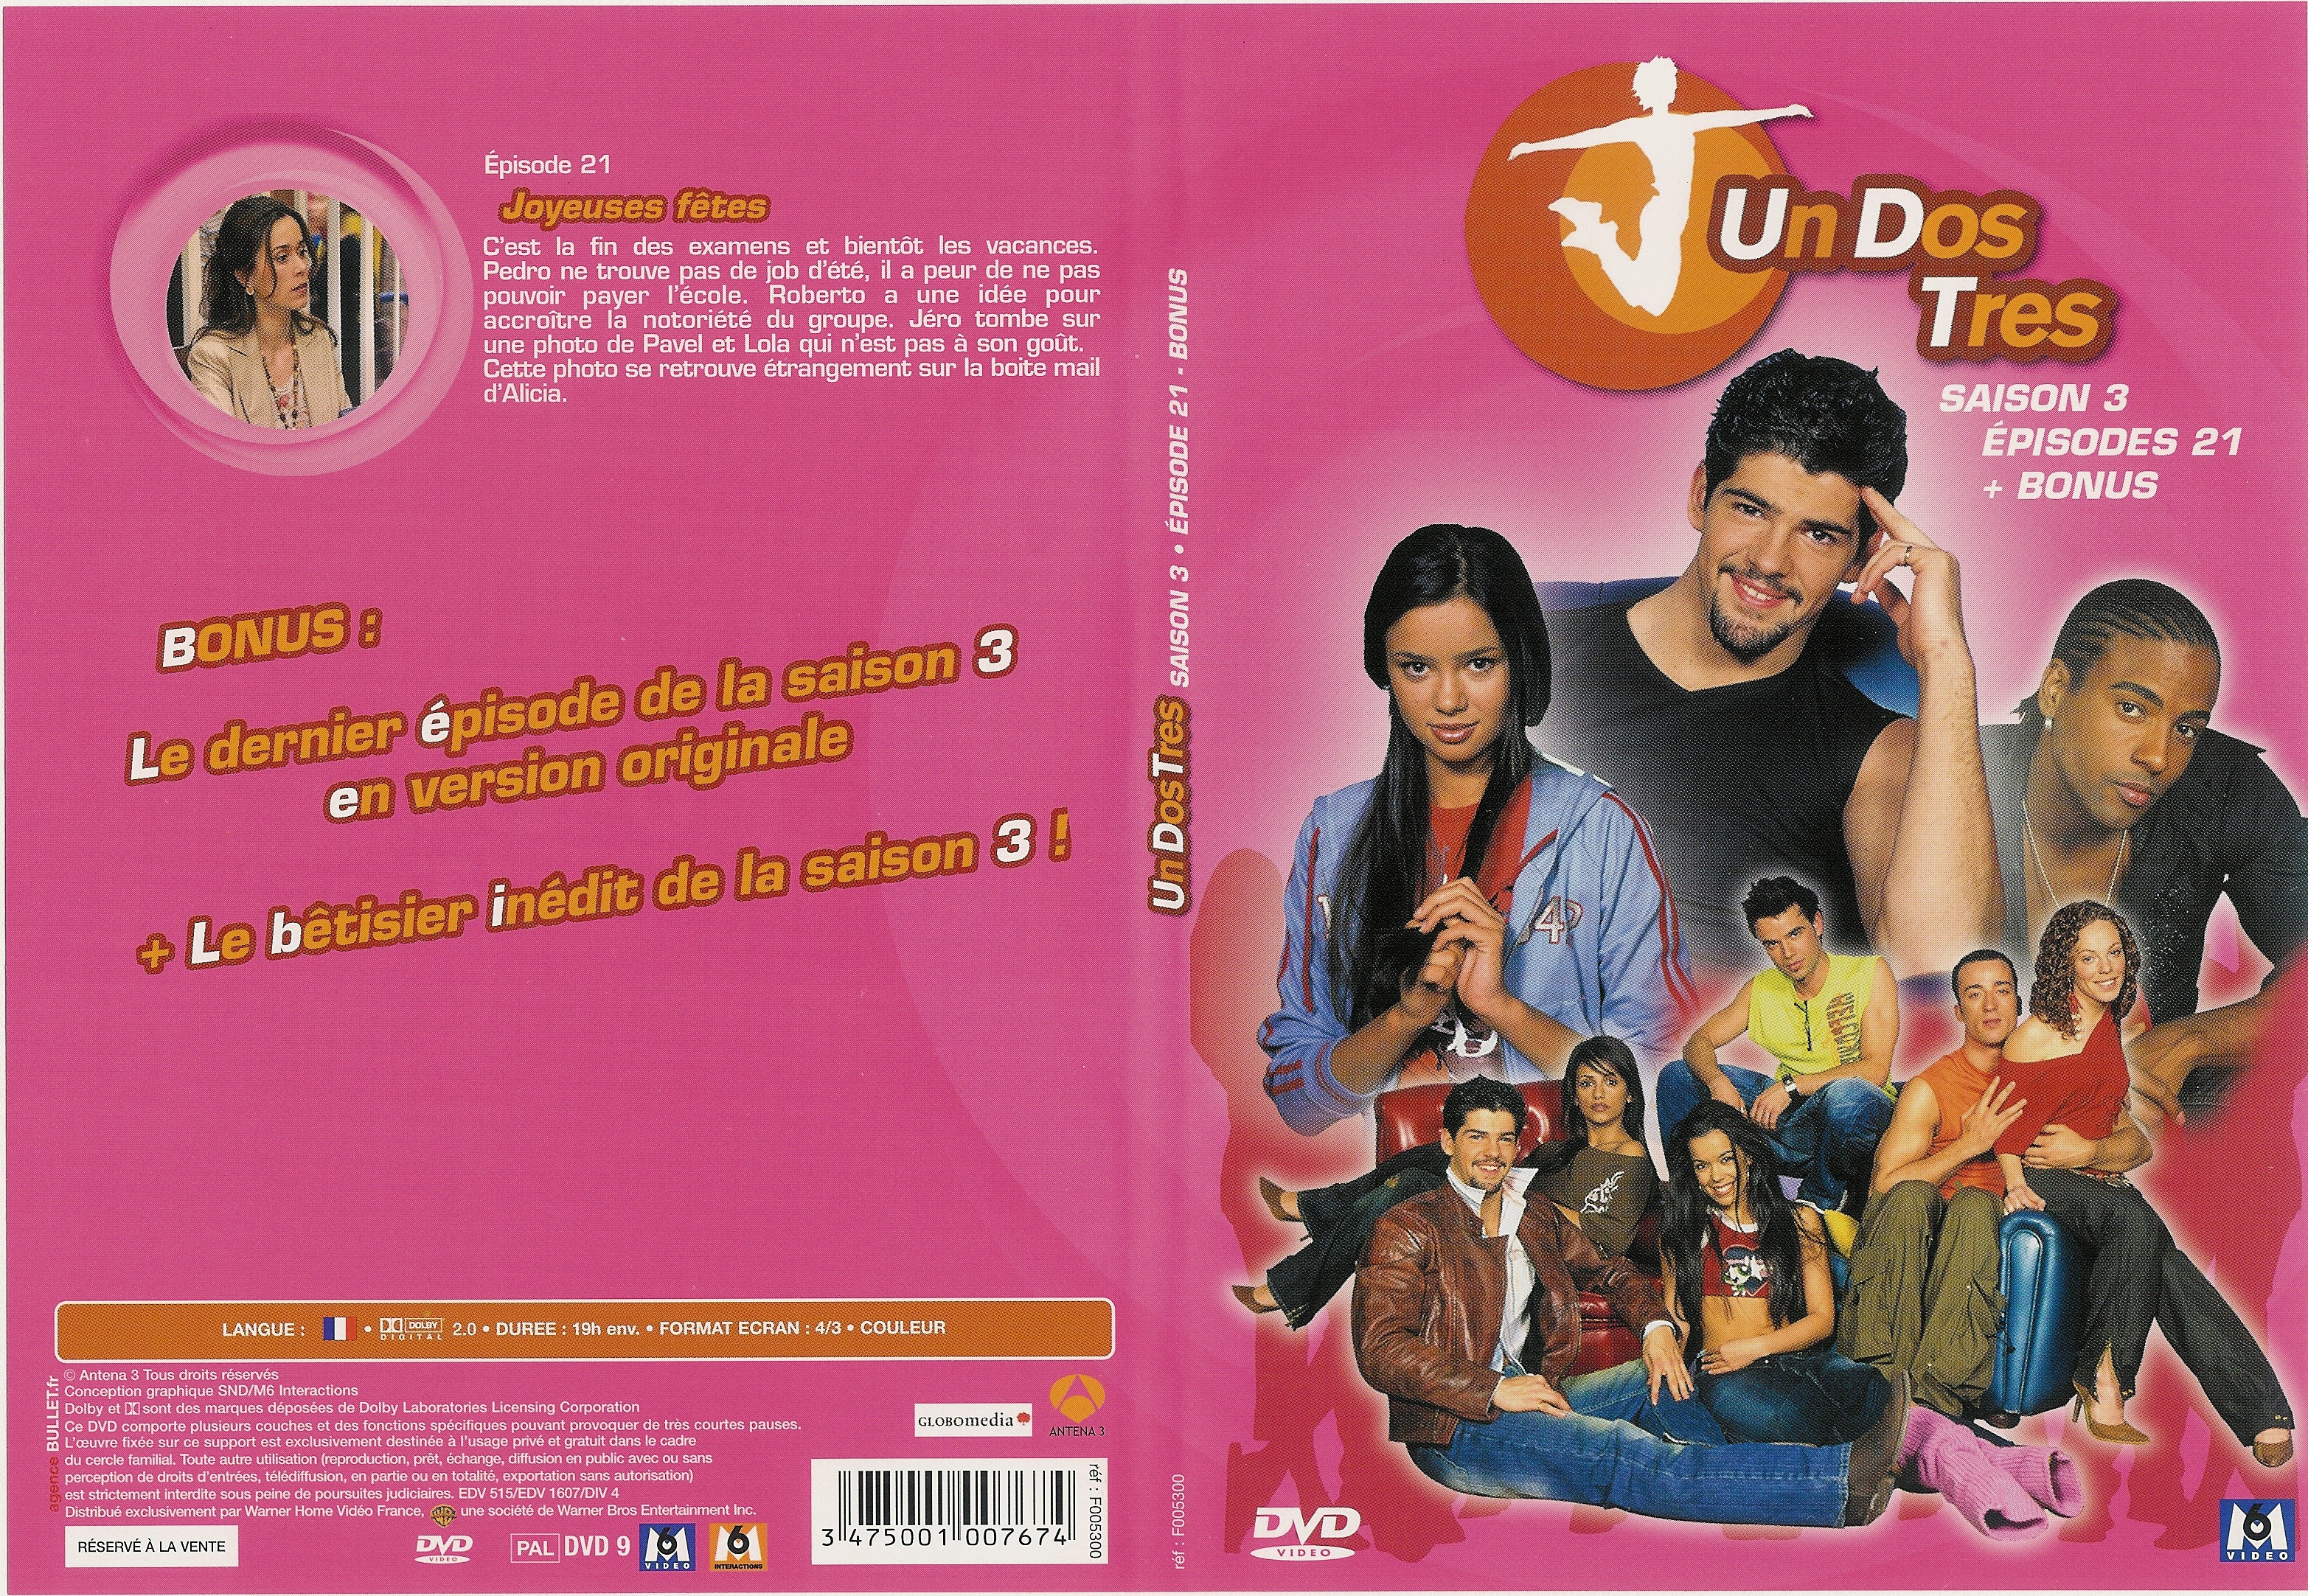 Jaquette DVD Un dos tres Saison 3 DVD 6